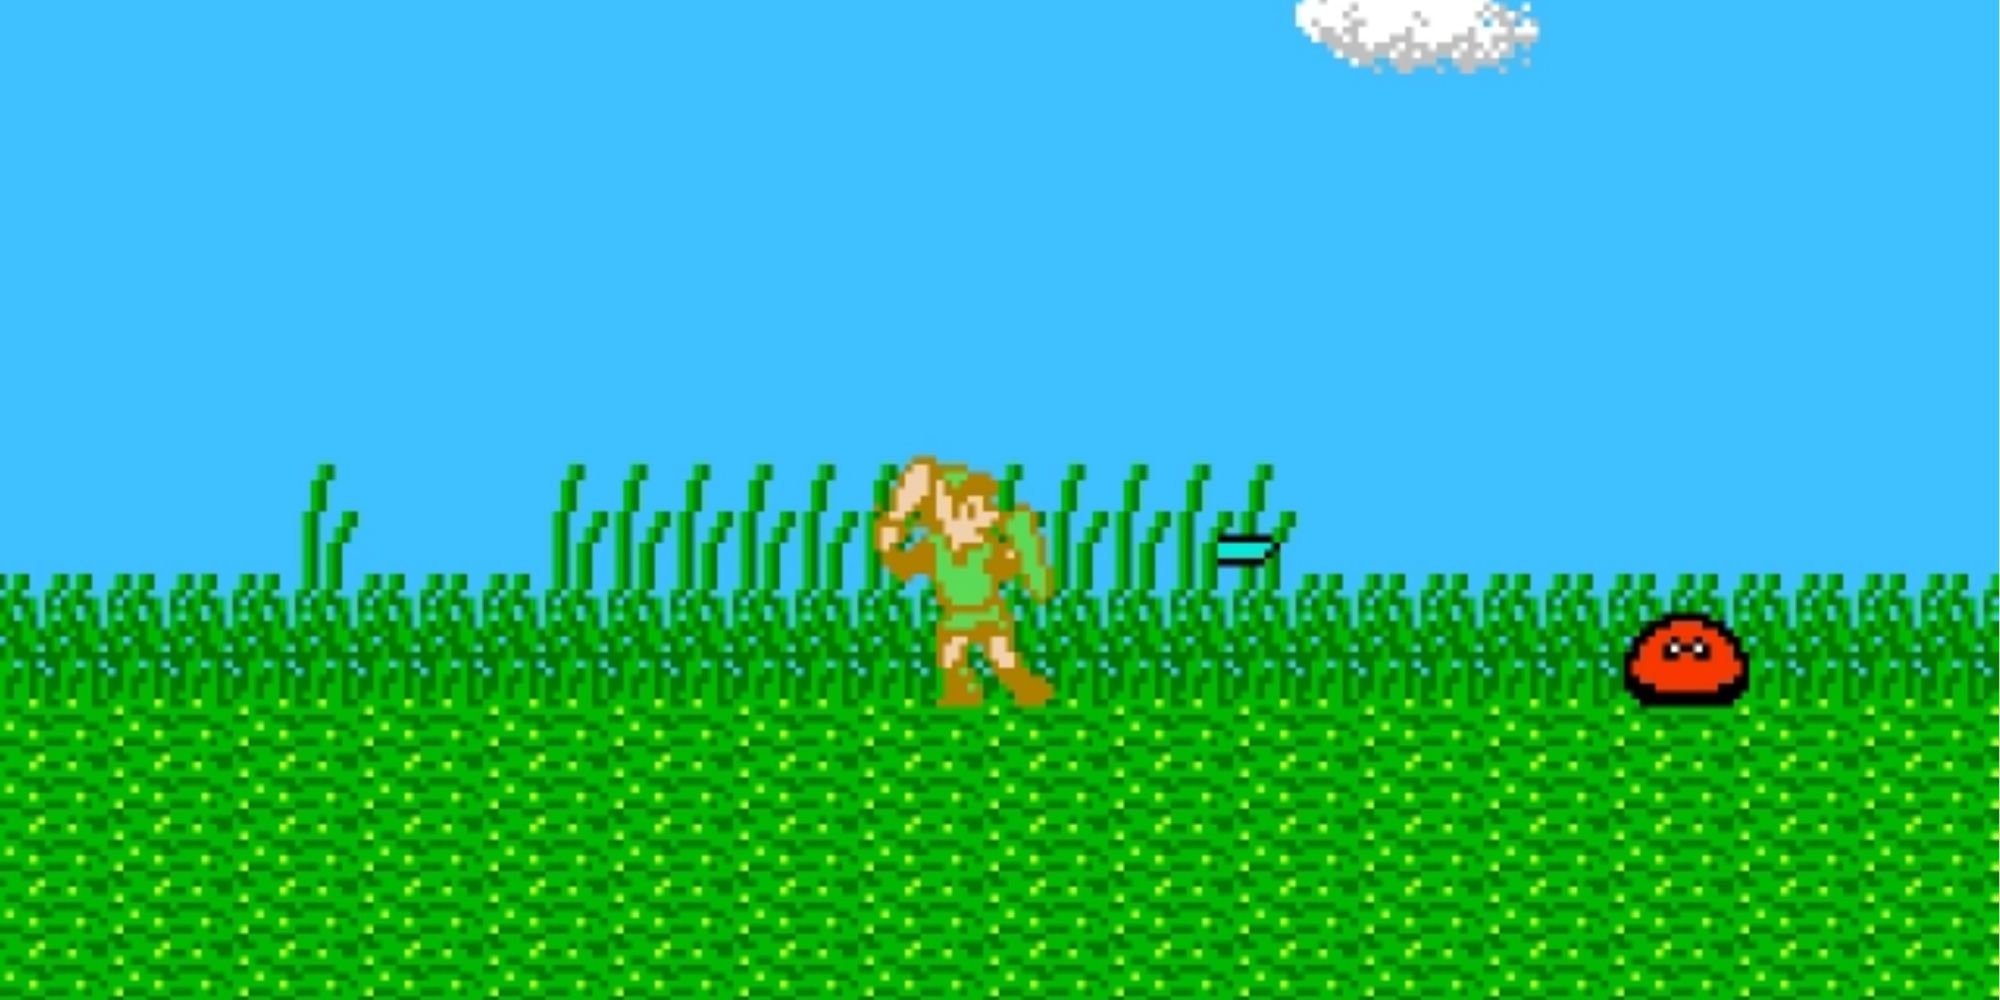 Fighting enemies in Zelda 2 The Adventure Of Link